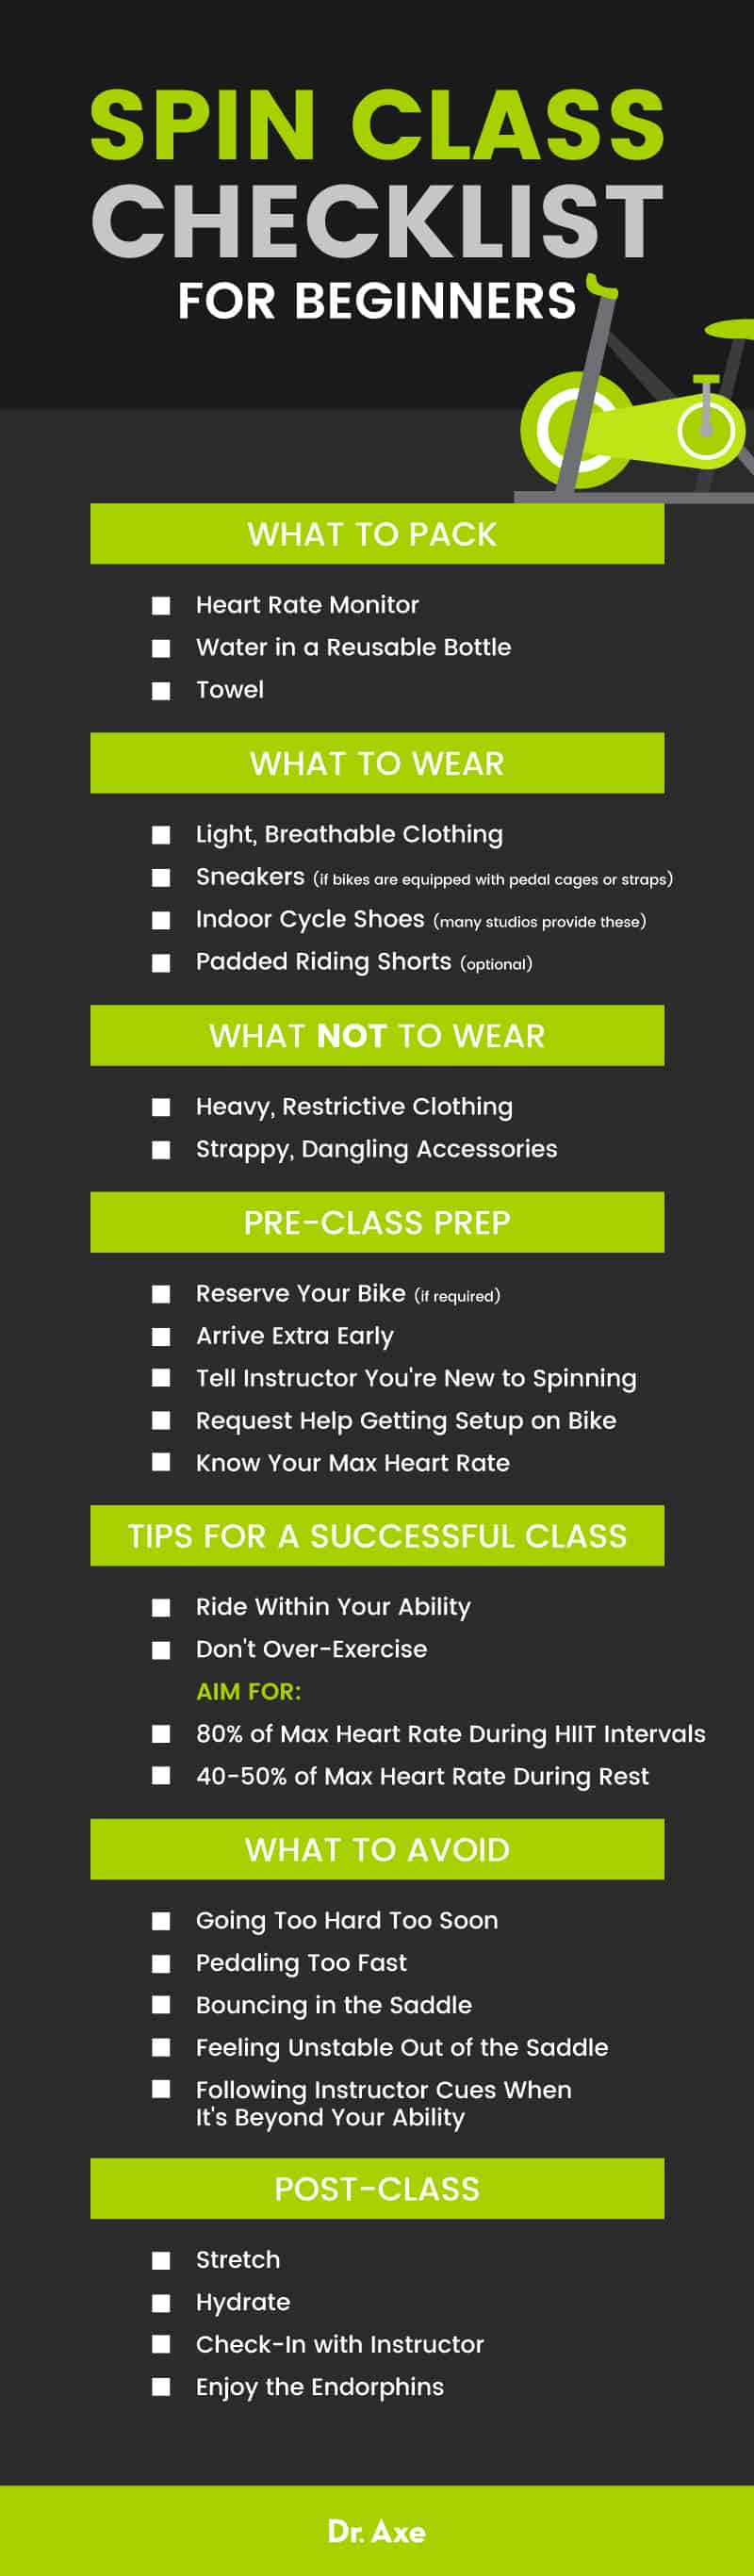 Spin class checklist - Dr. Axe